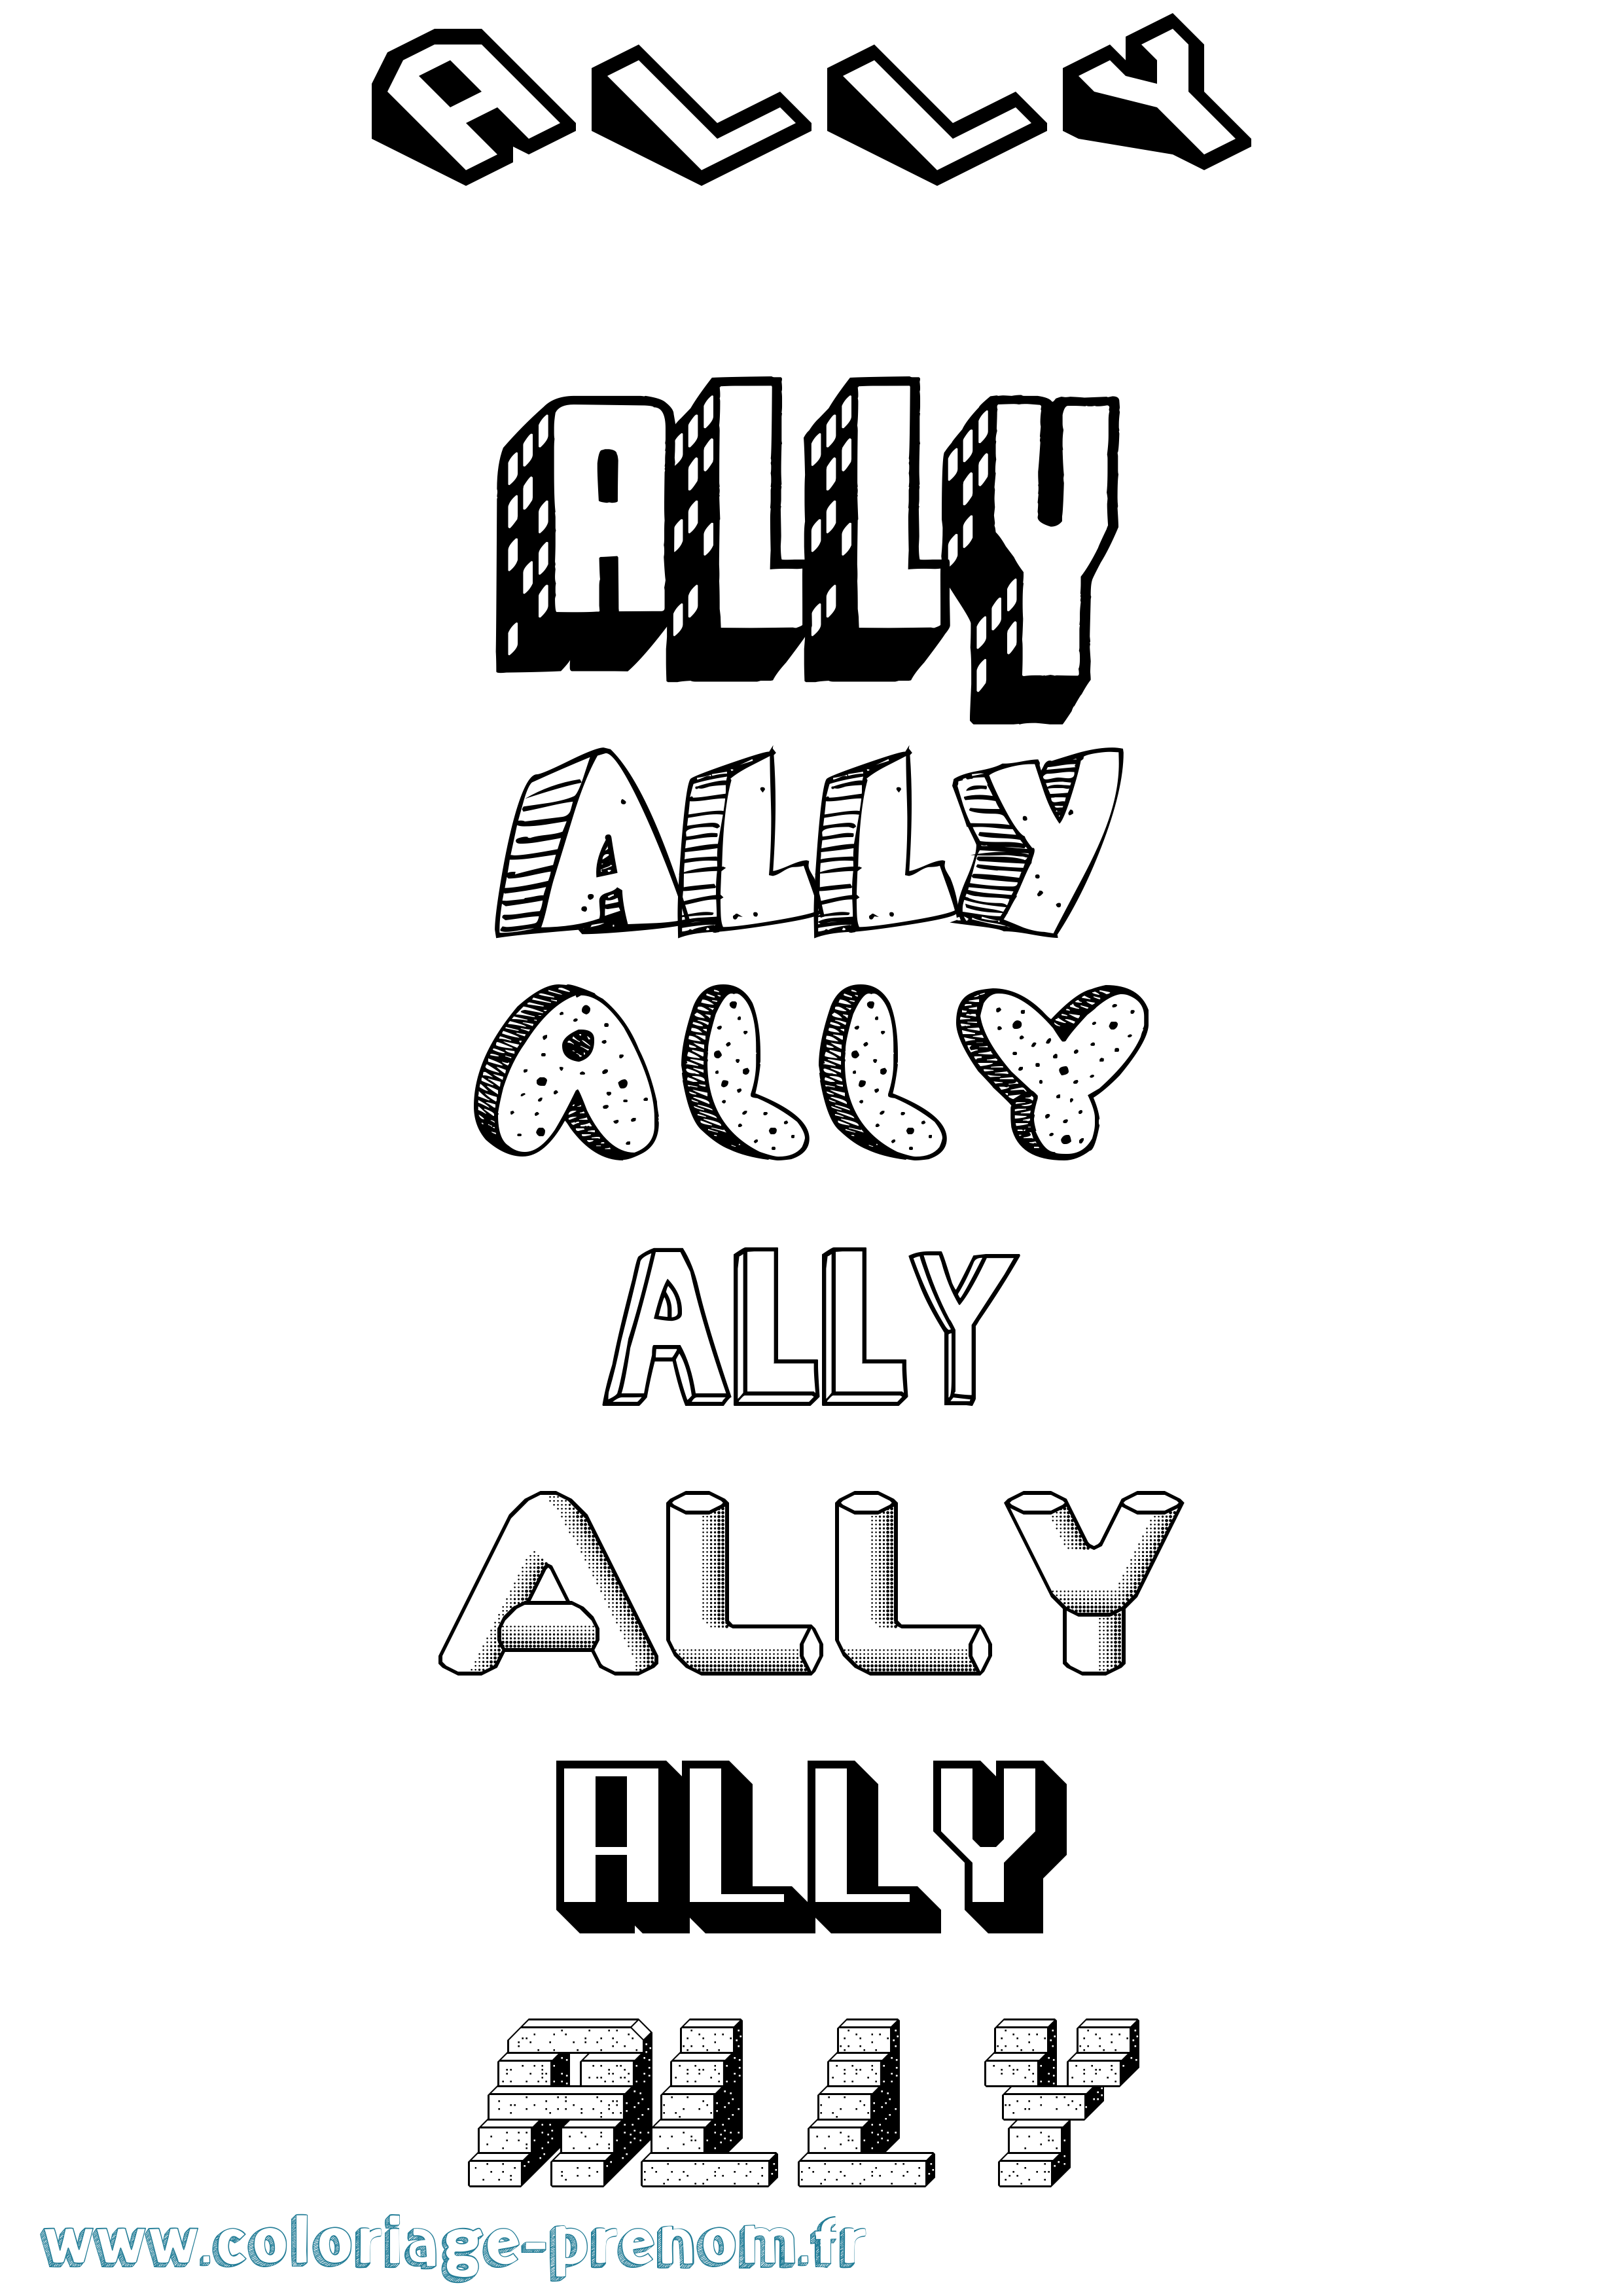 Coloriage prénom Ally Effet 3D